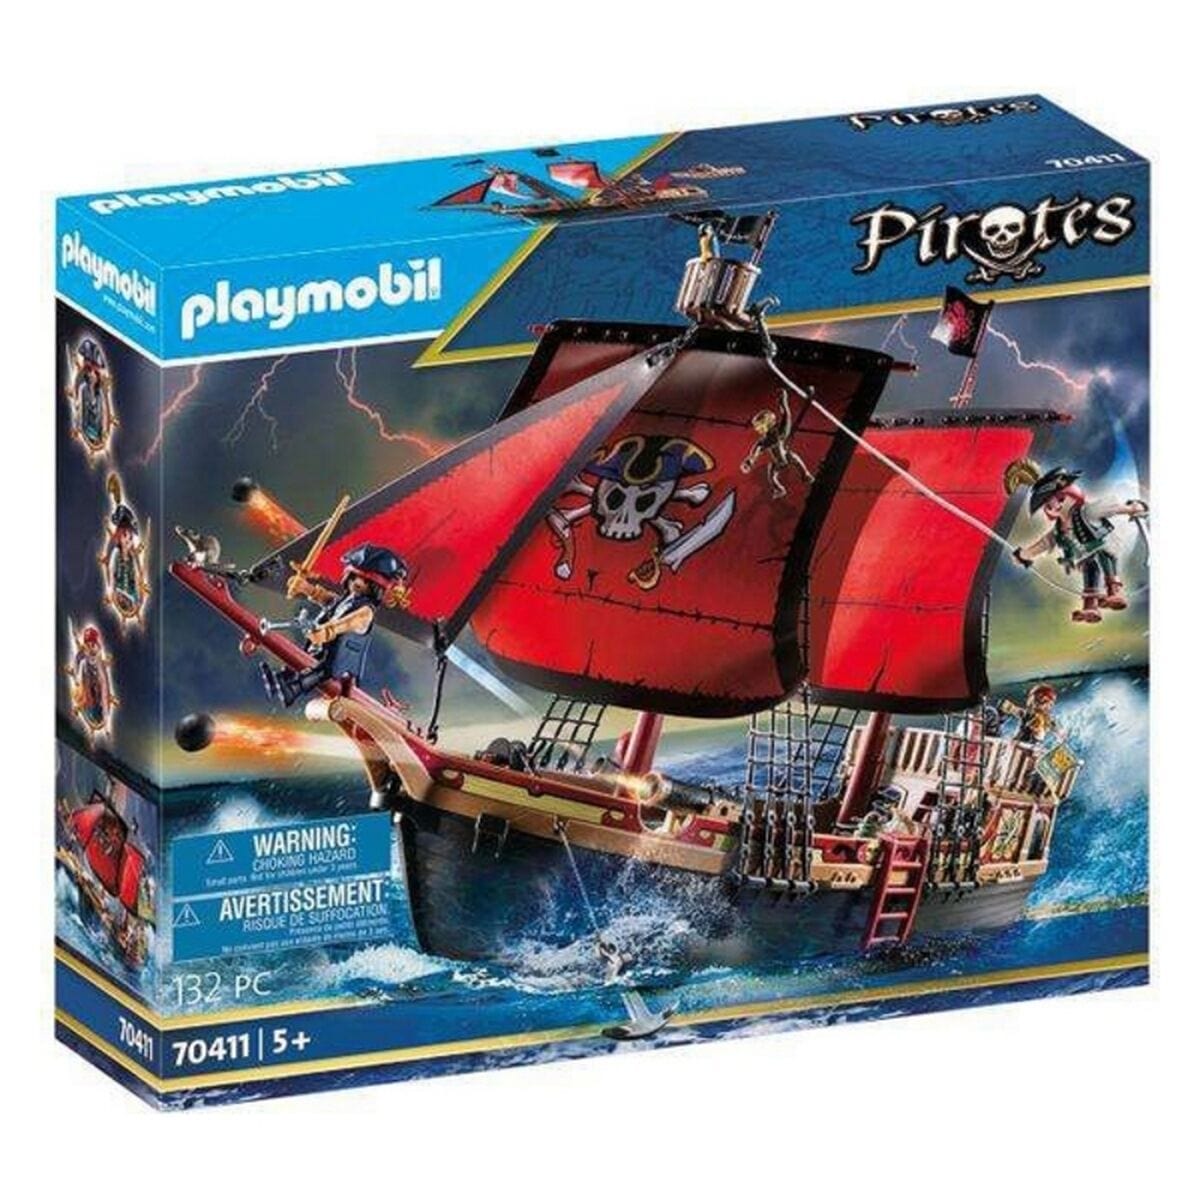 Playmobil Spielzeug | Kostüme > Spielzeug und Spiele > Lernspiele Playset Pirates- Skull Pirate Ship Playmobil 70411 (132 pcs